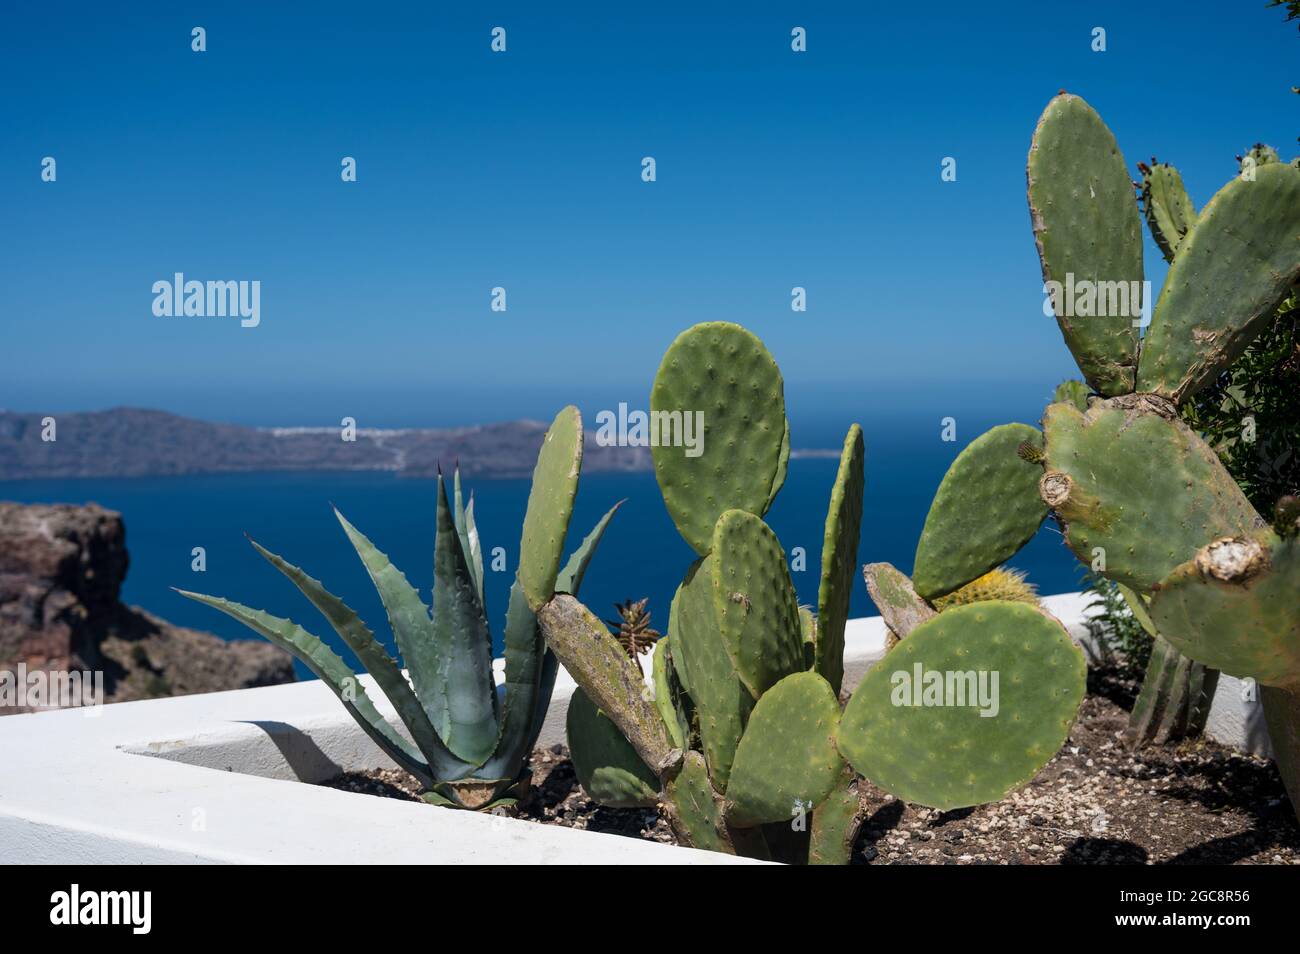 Gros plan de cactus et d'aloès qui poussent dans un lit de fleurs à Santorin. Caldera en arrière-plan. Mer Egée. Banque D'Images